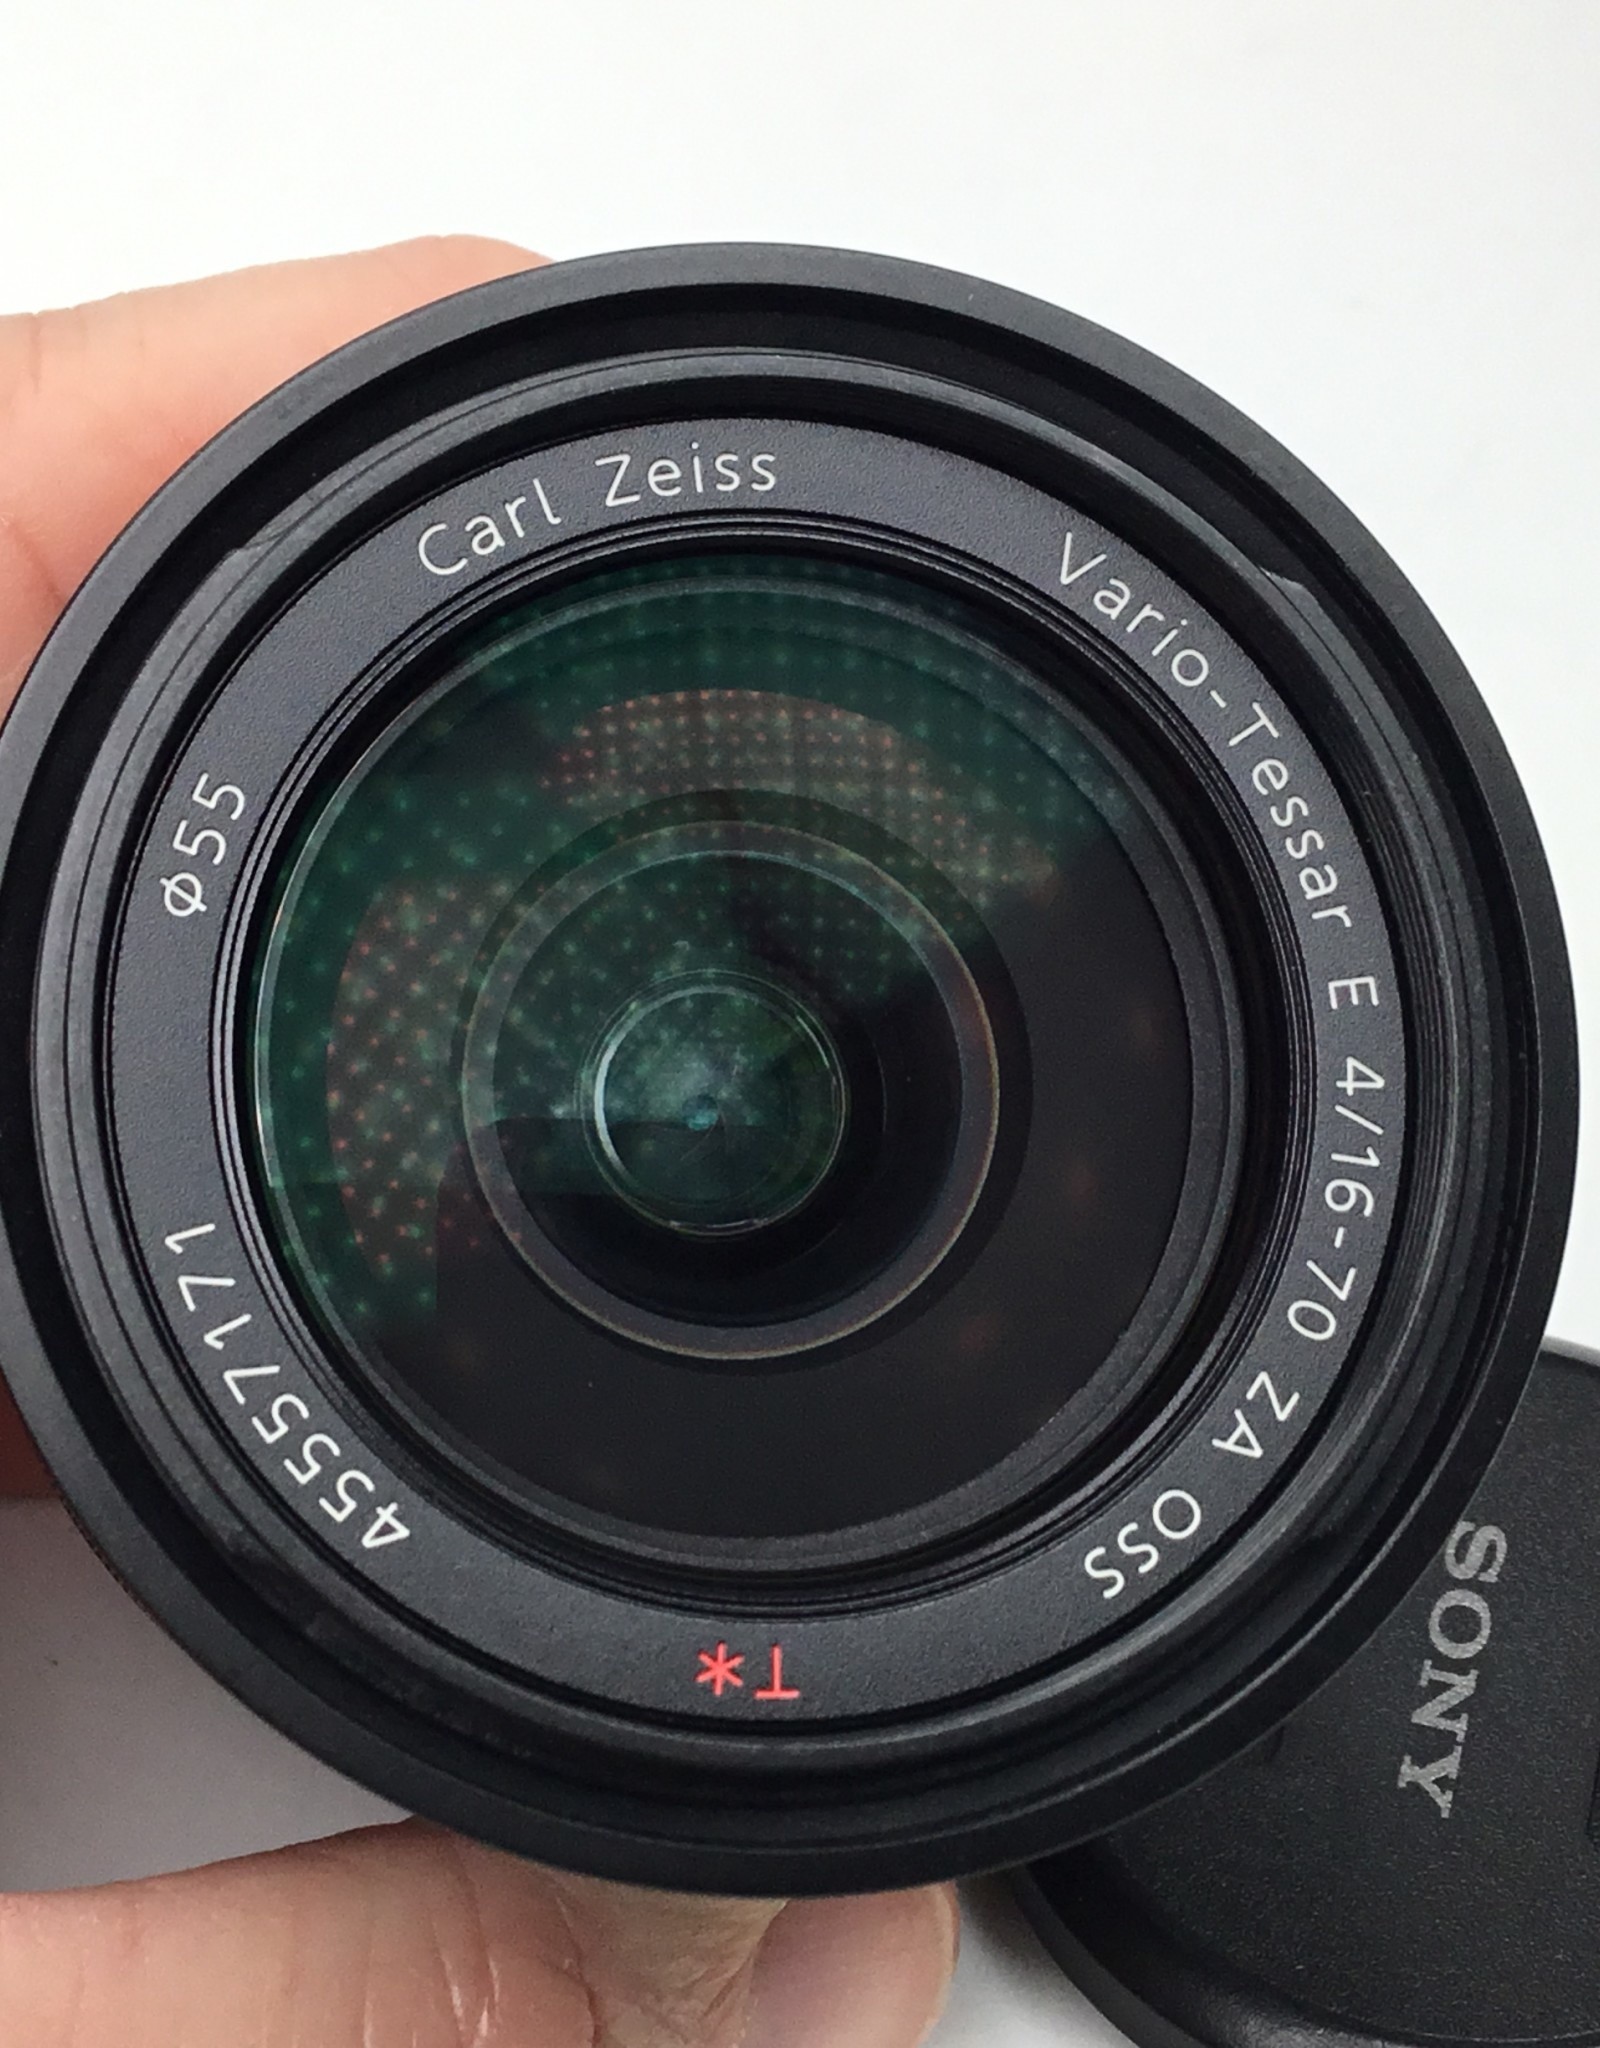 SONY Sony Vario-Tessar E 26-70mm f4 ZA OSS Lens Used Good